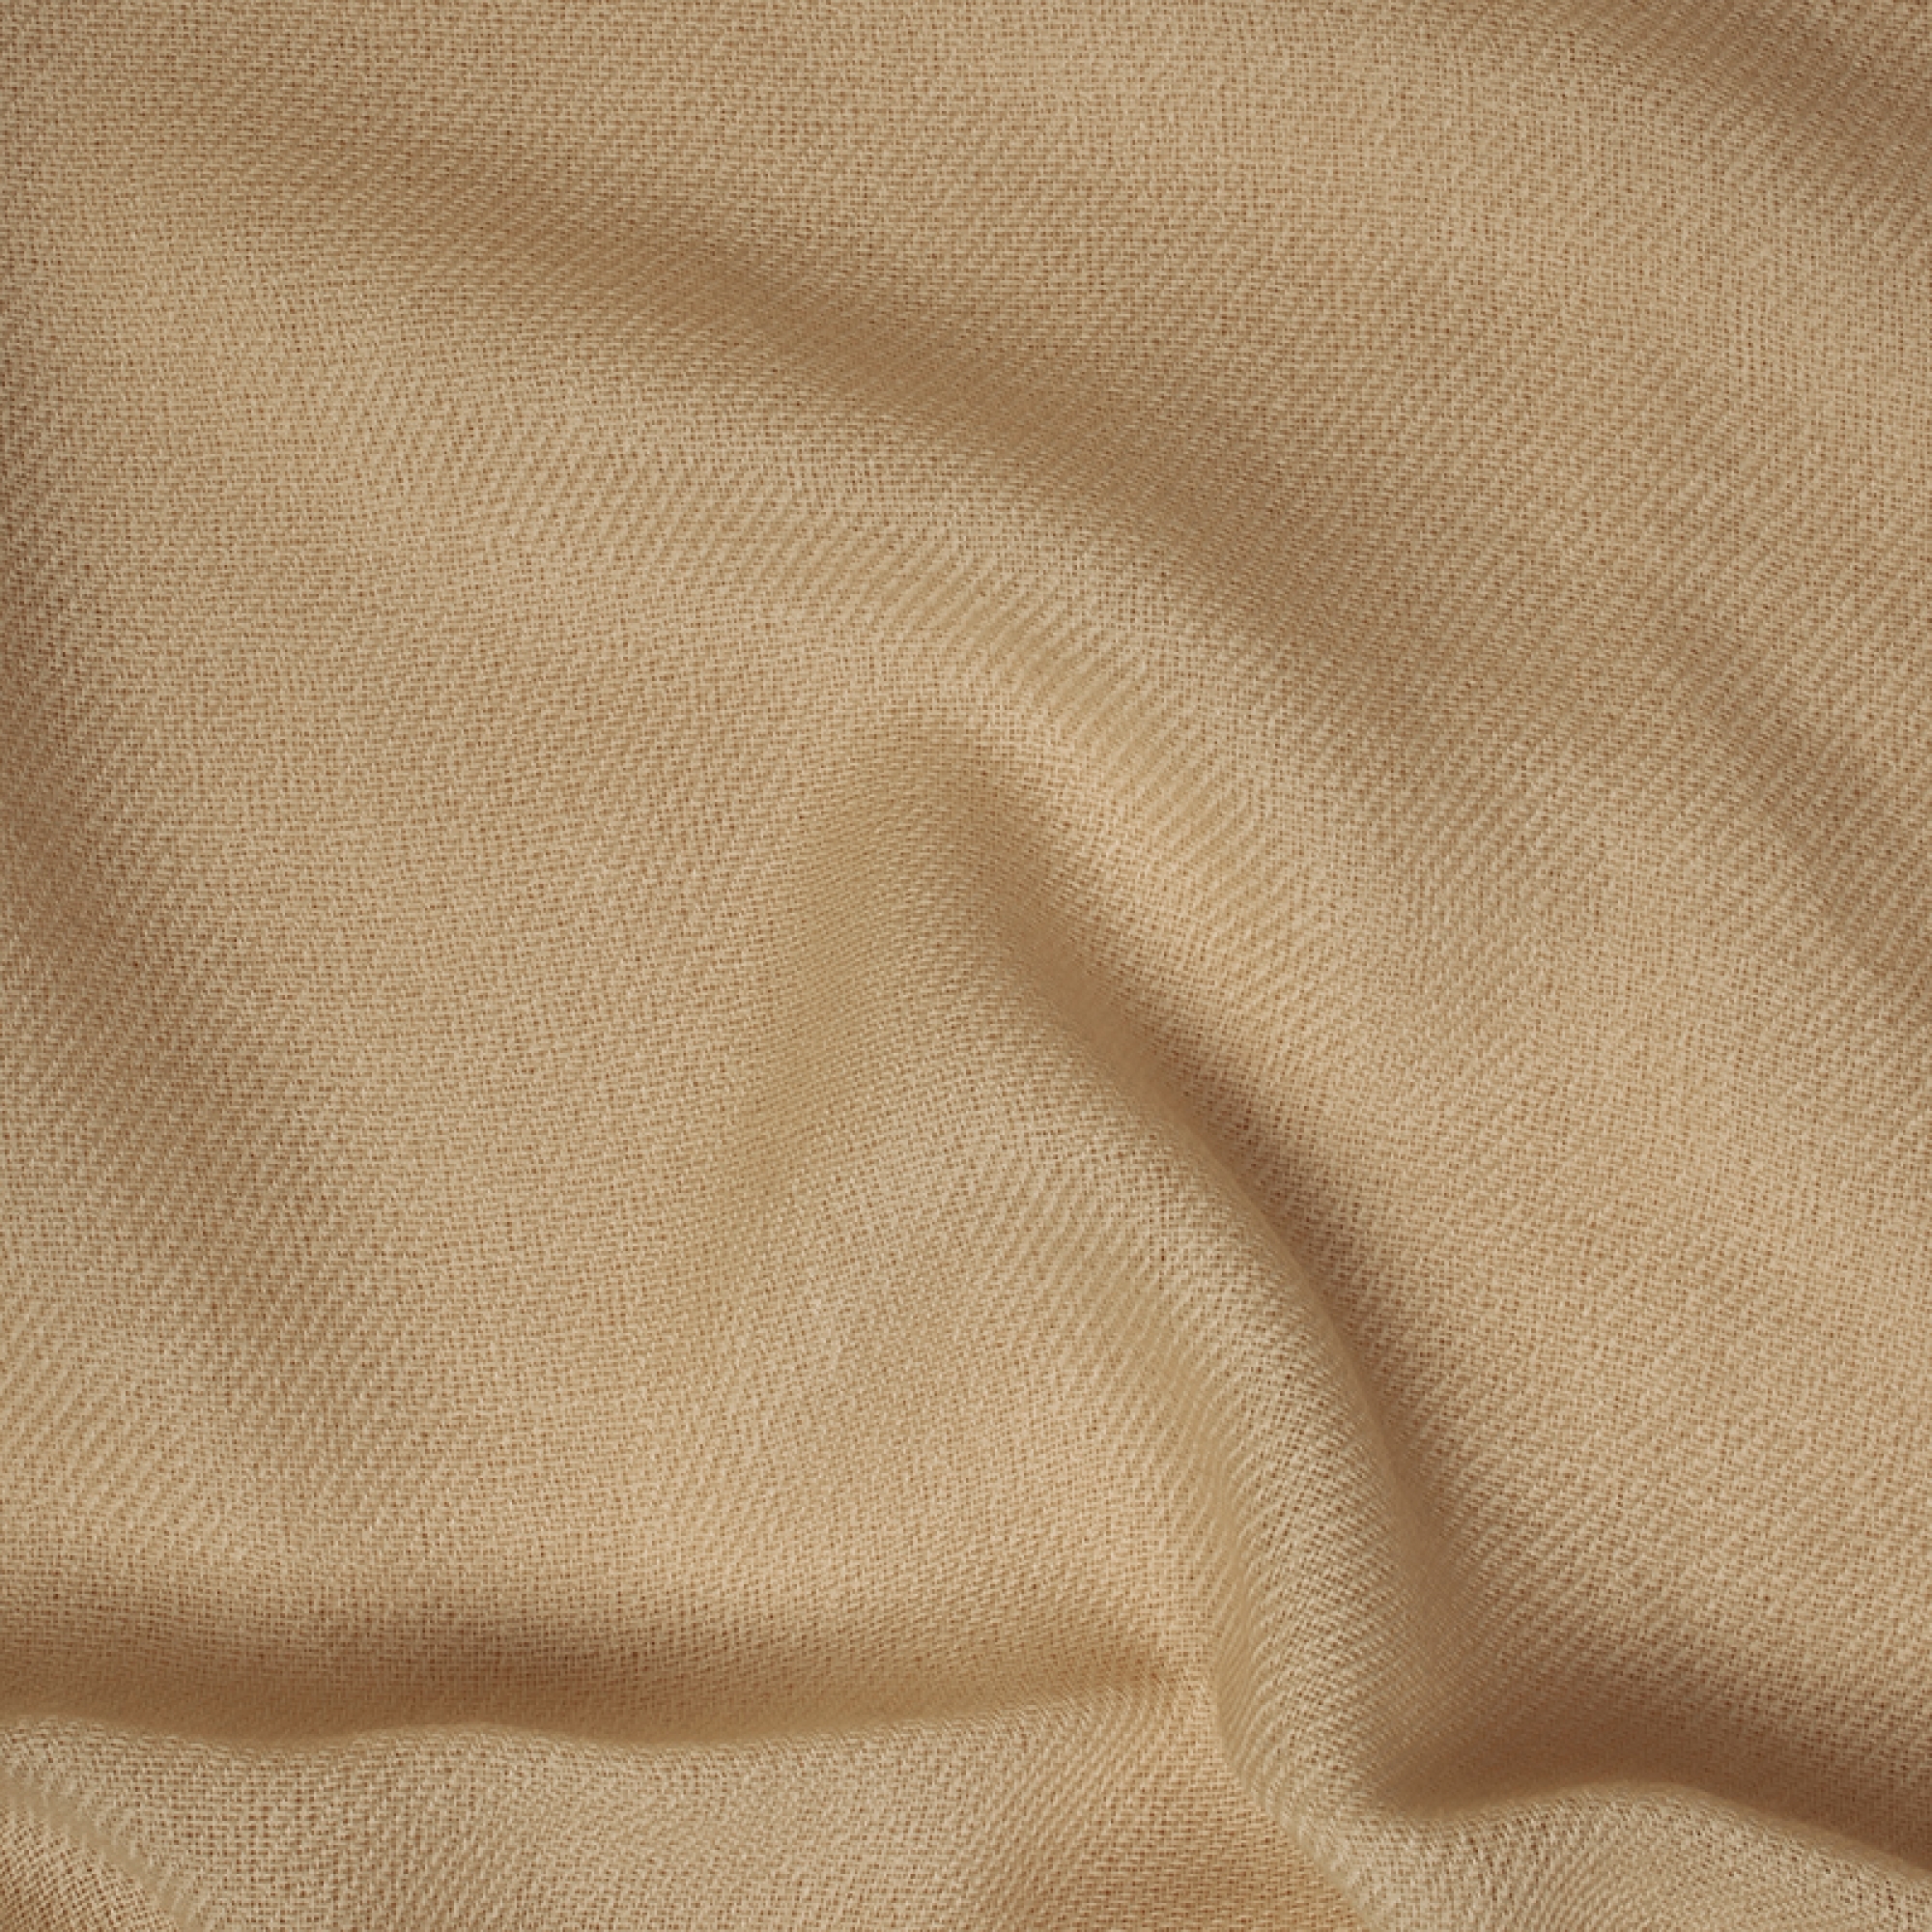 Cachemire accessoires couvertures plaids toodoo plain m 180 x 220 champagne dore 180 x 220 cm